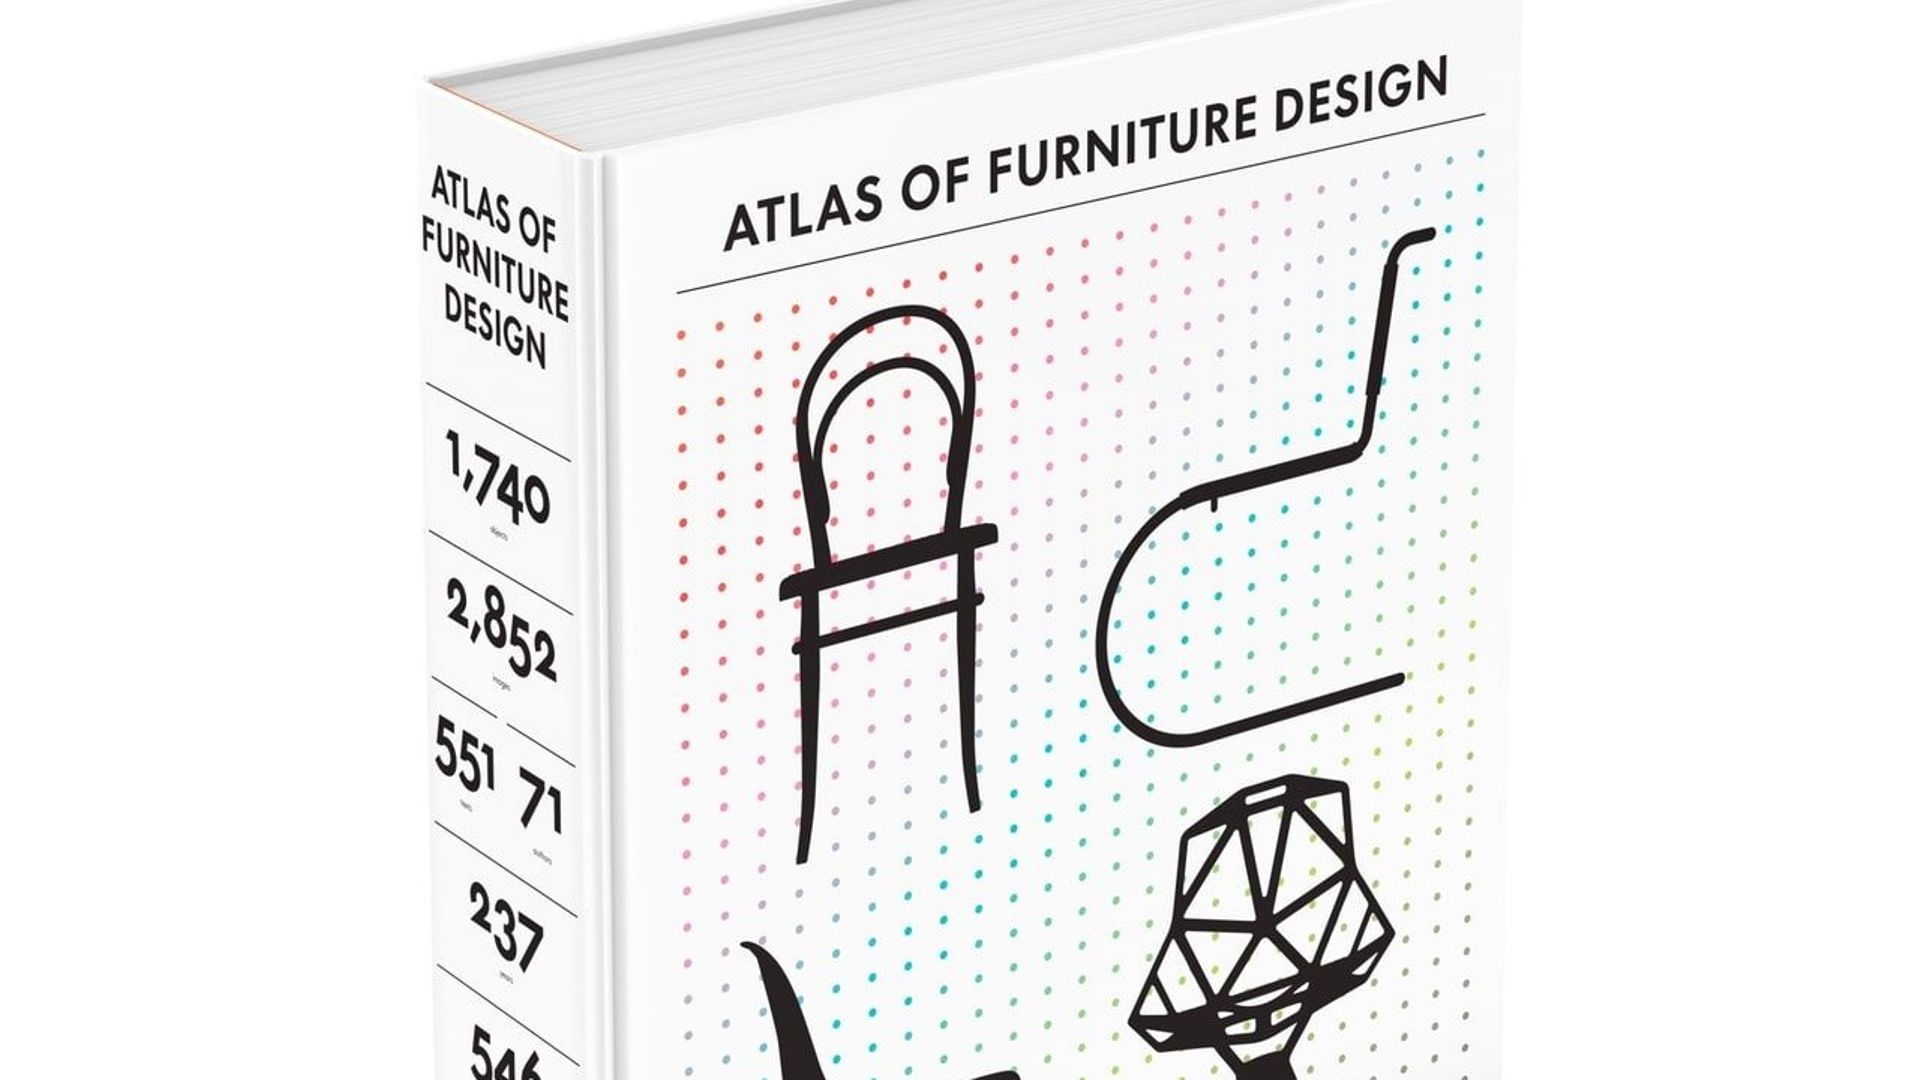 L'Atlas du mobilier design compilé par le Vitra Design Museum.